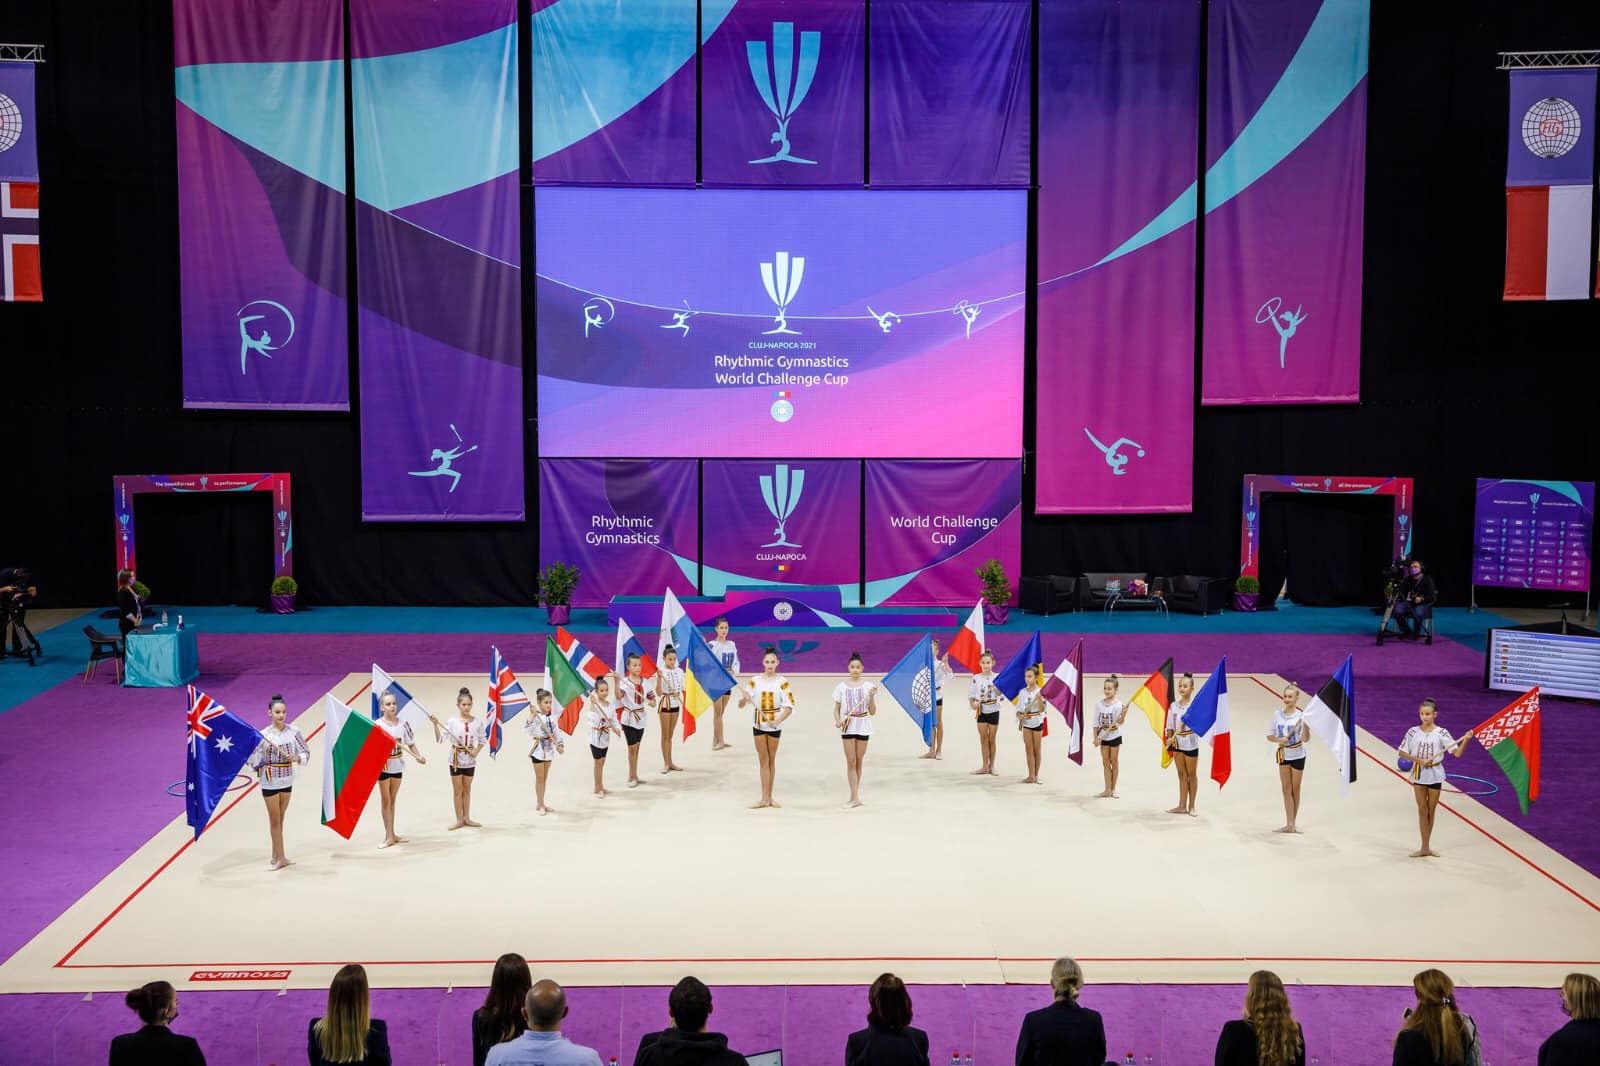 La Cluj-Napoca a început Cupa Mondială de Gimnastică Ritmică, la BT Arena